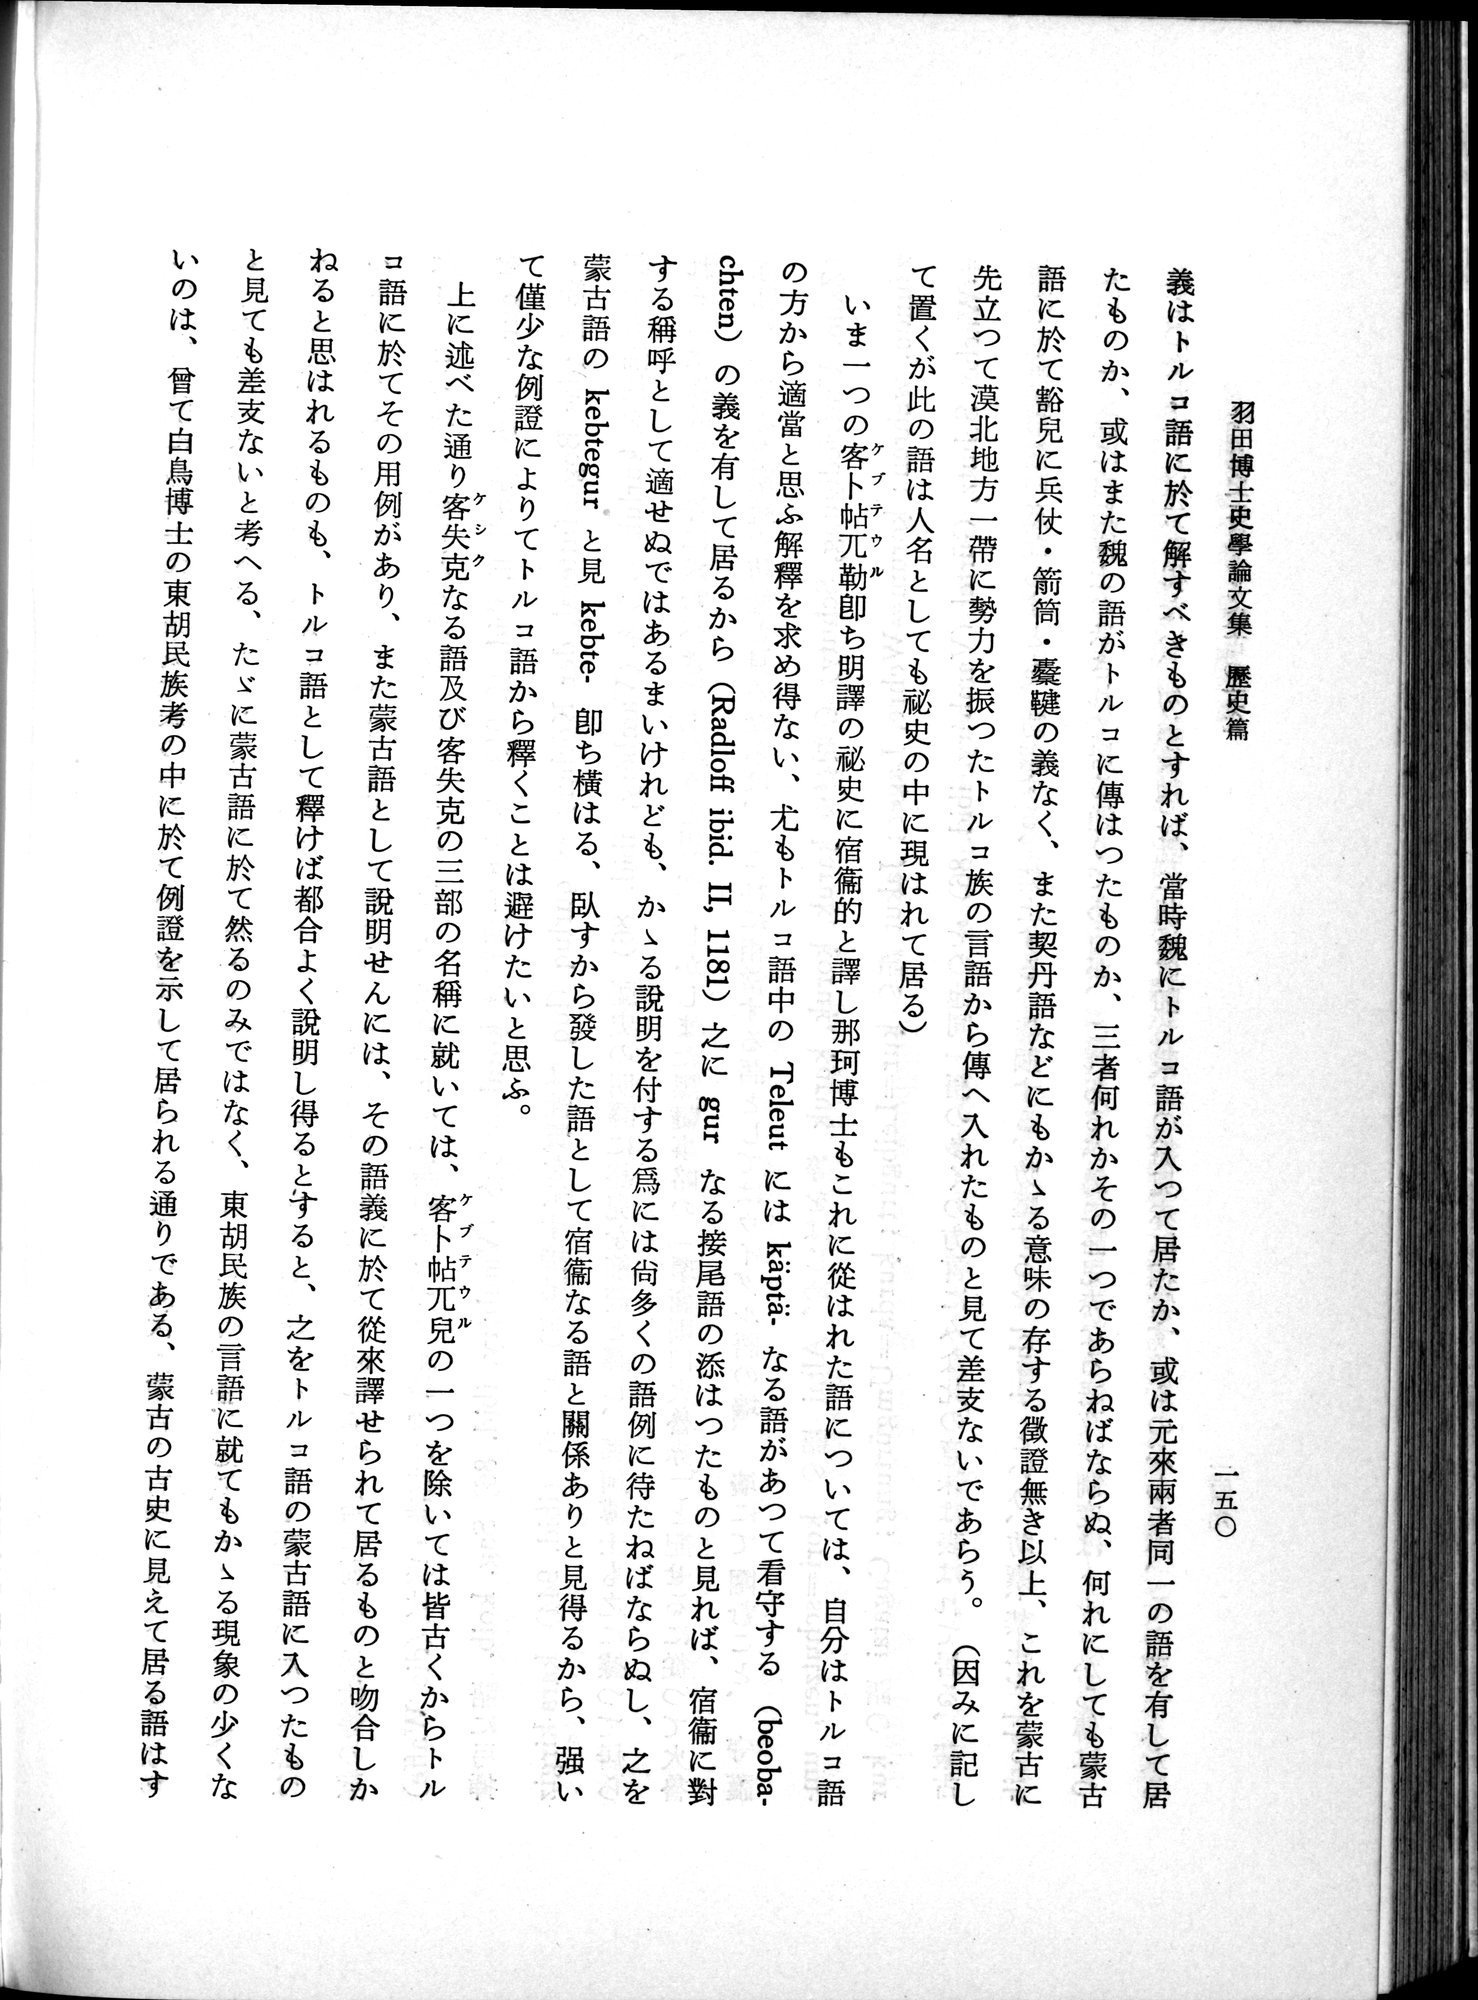 羽田博士史学論文集 : vol.1 / Page 188 (Grayscale High Resolution Image)